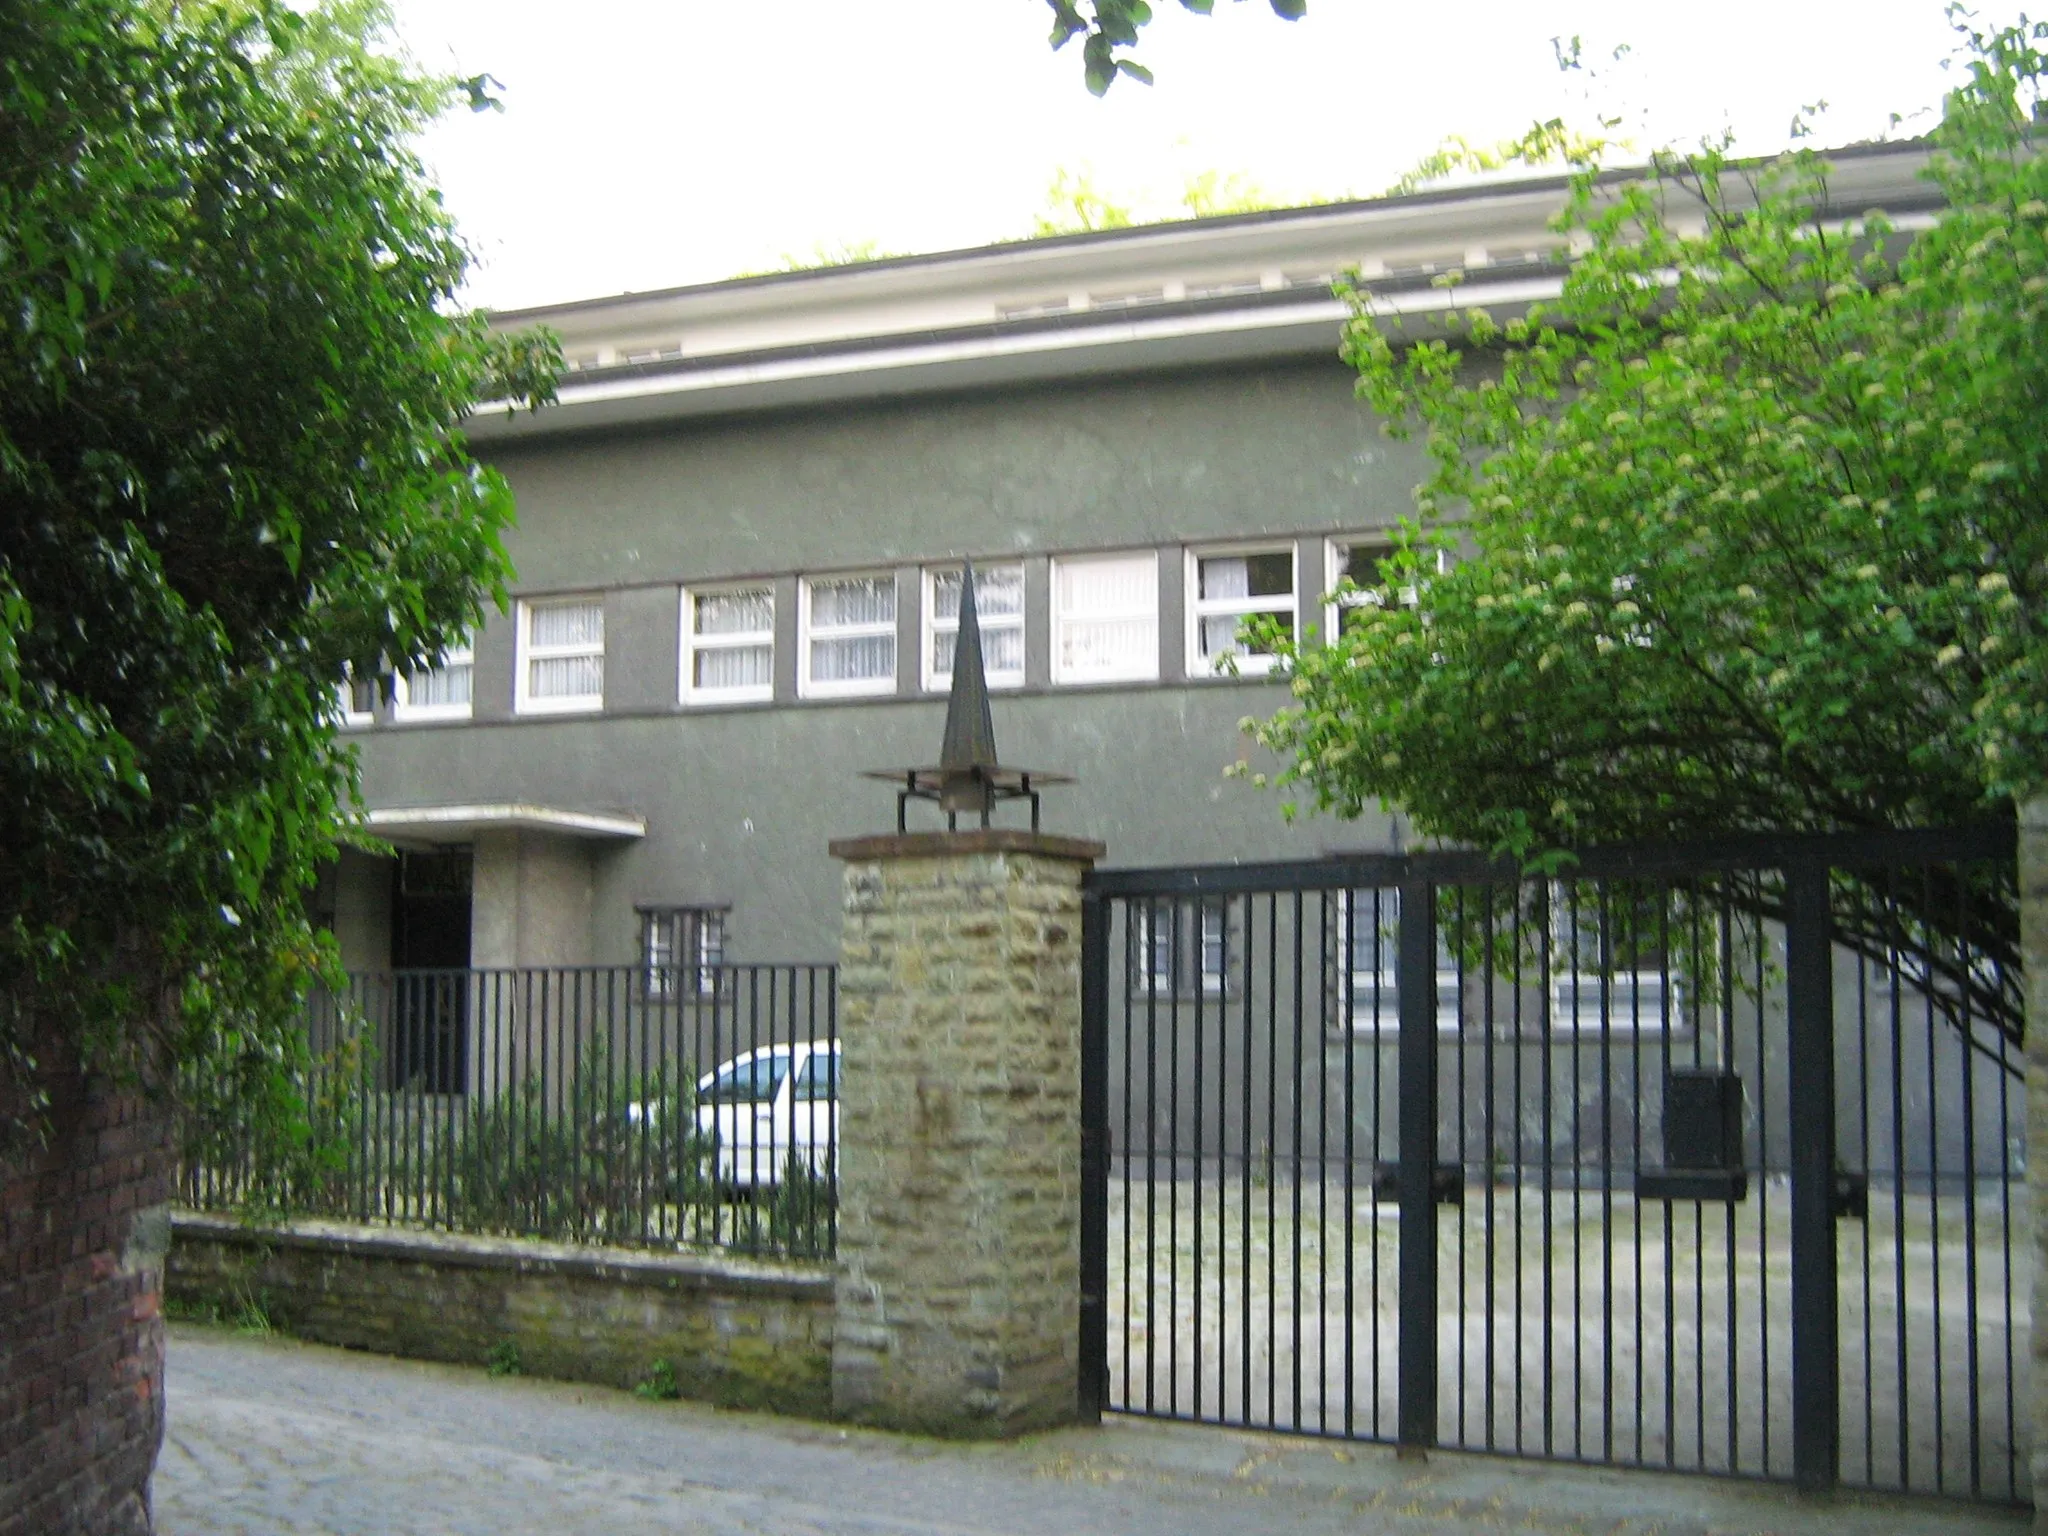 Photo showing: Villa Sternberg in Soest von Straße aus – der innen wie außen besterhaltene Bau Bruno Pauls (1927) in der Stadt